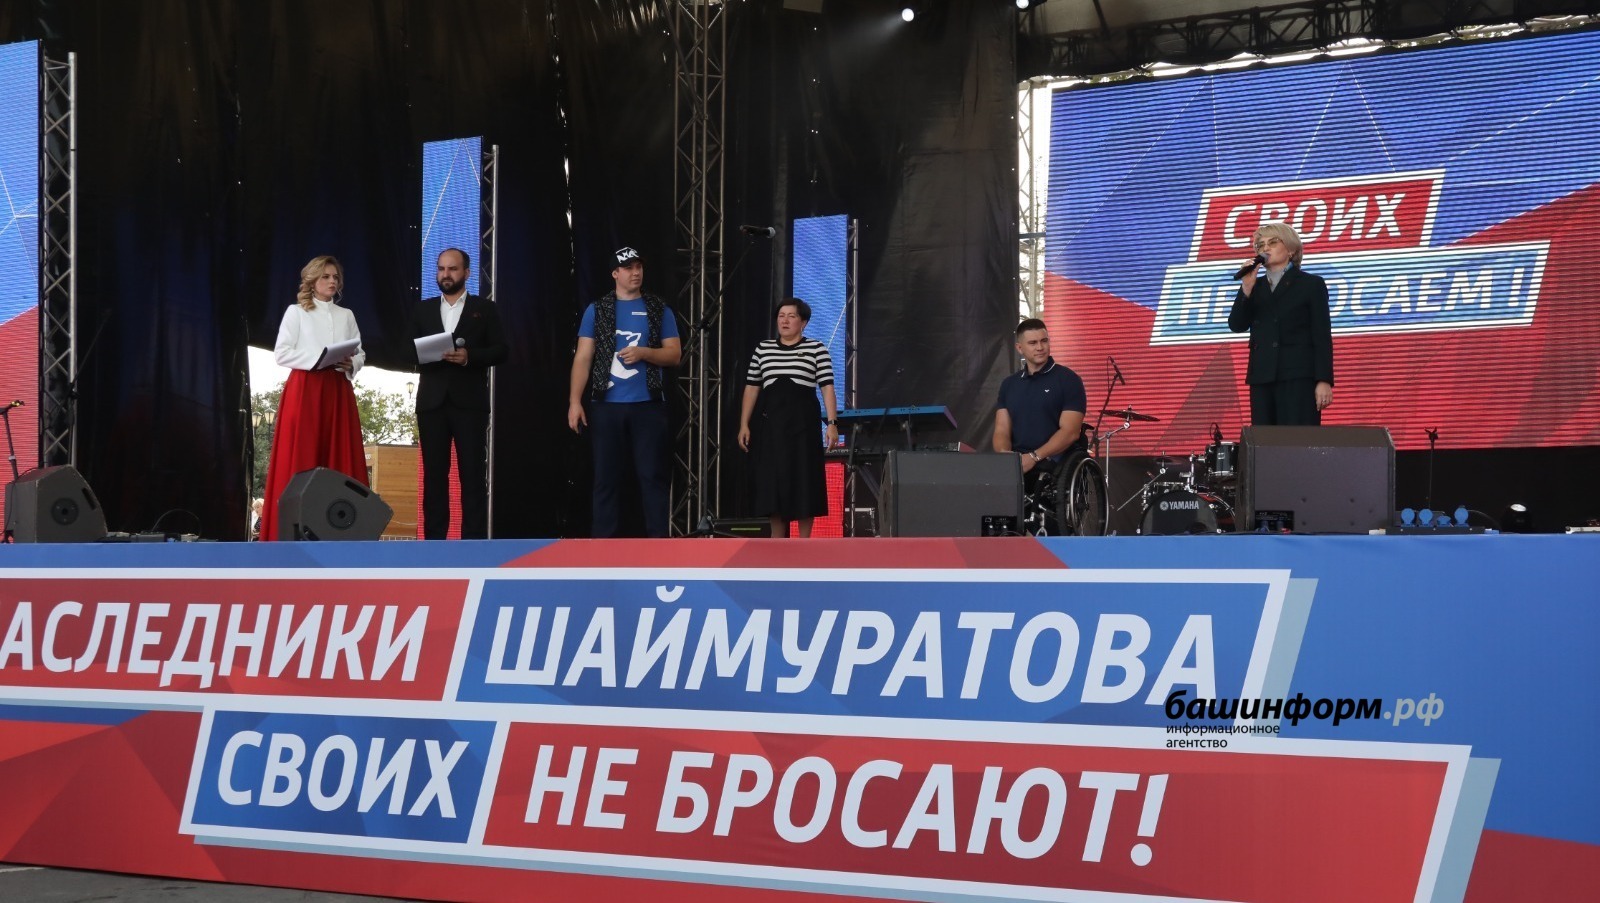 На митинг-концерт «Потомки Шаймуратова своих не бросают!» пришли сегодня в Уфе более 20 тысяч человек